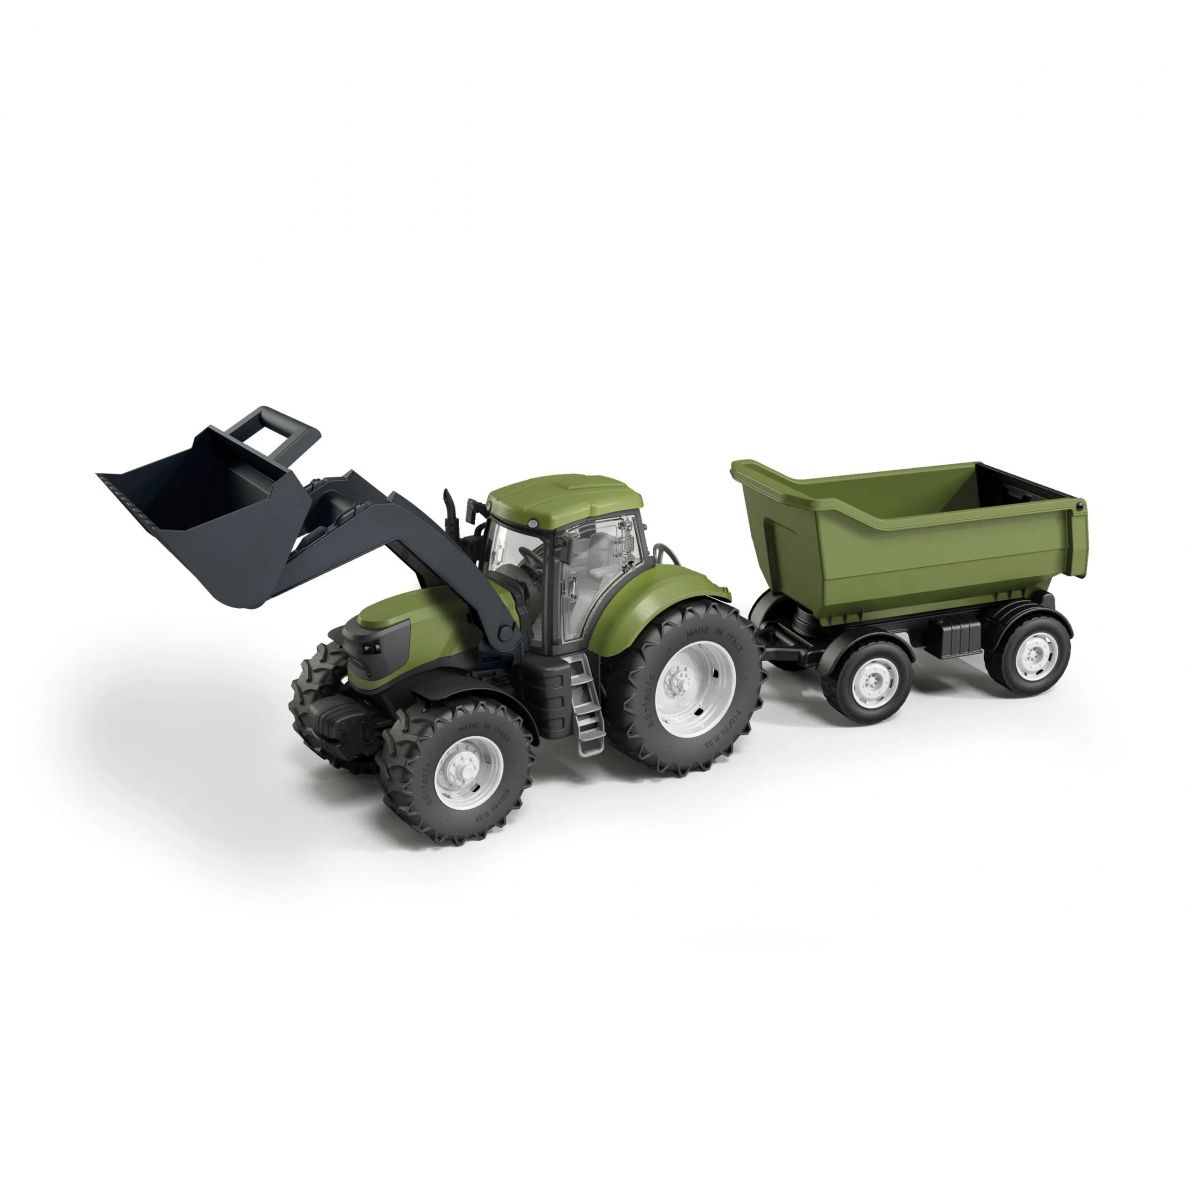 Traktor Dla Dzieci Zielony Z Łyżką I Wywrotką W Pudełku  Skala 1:16